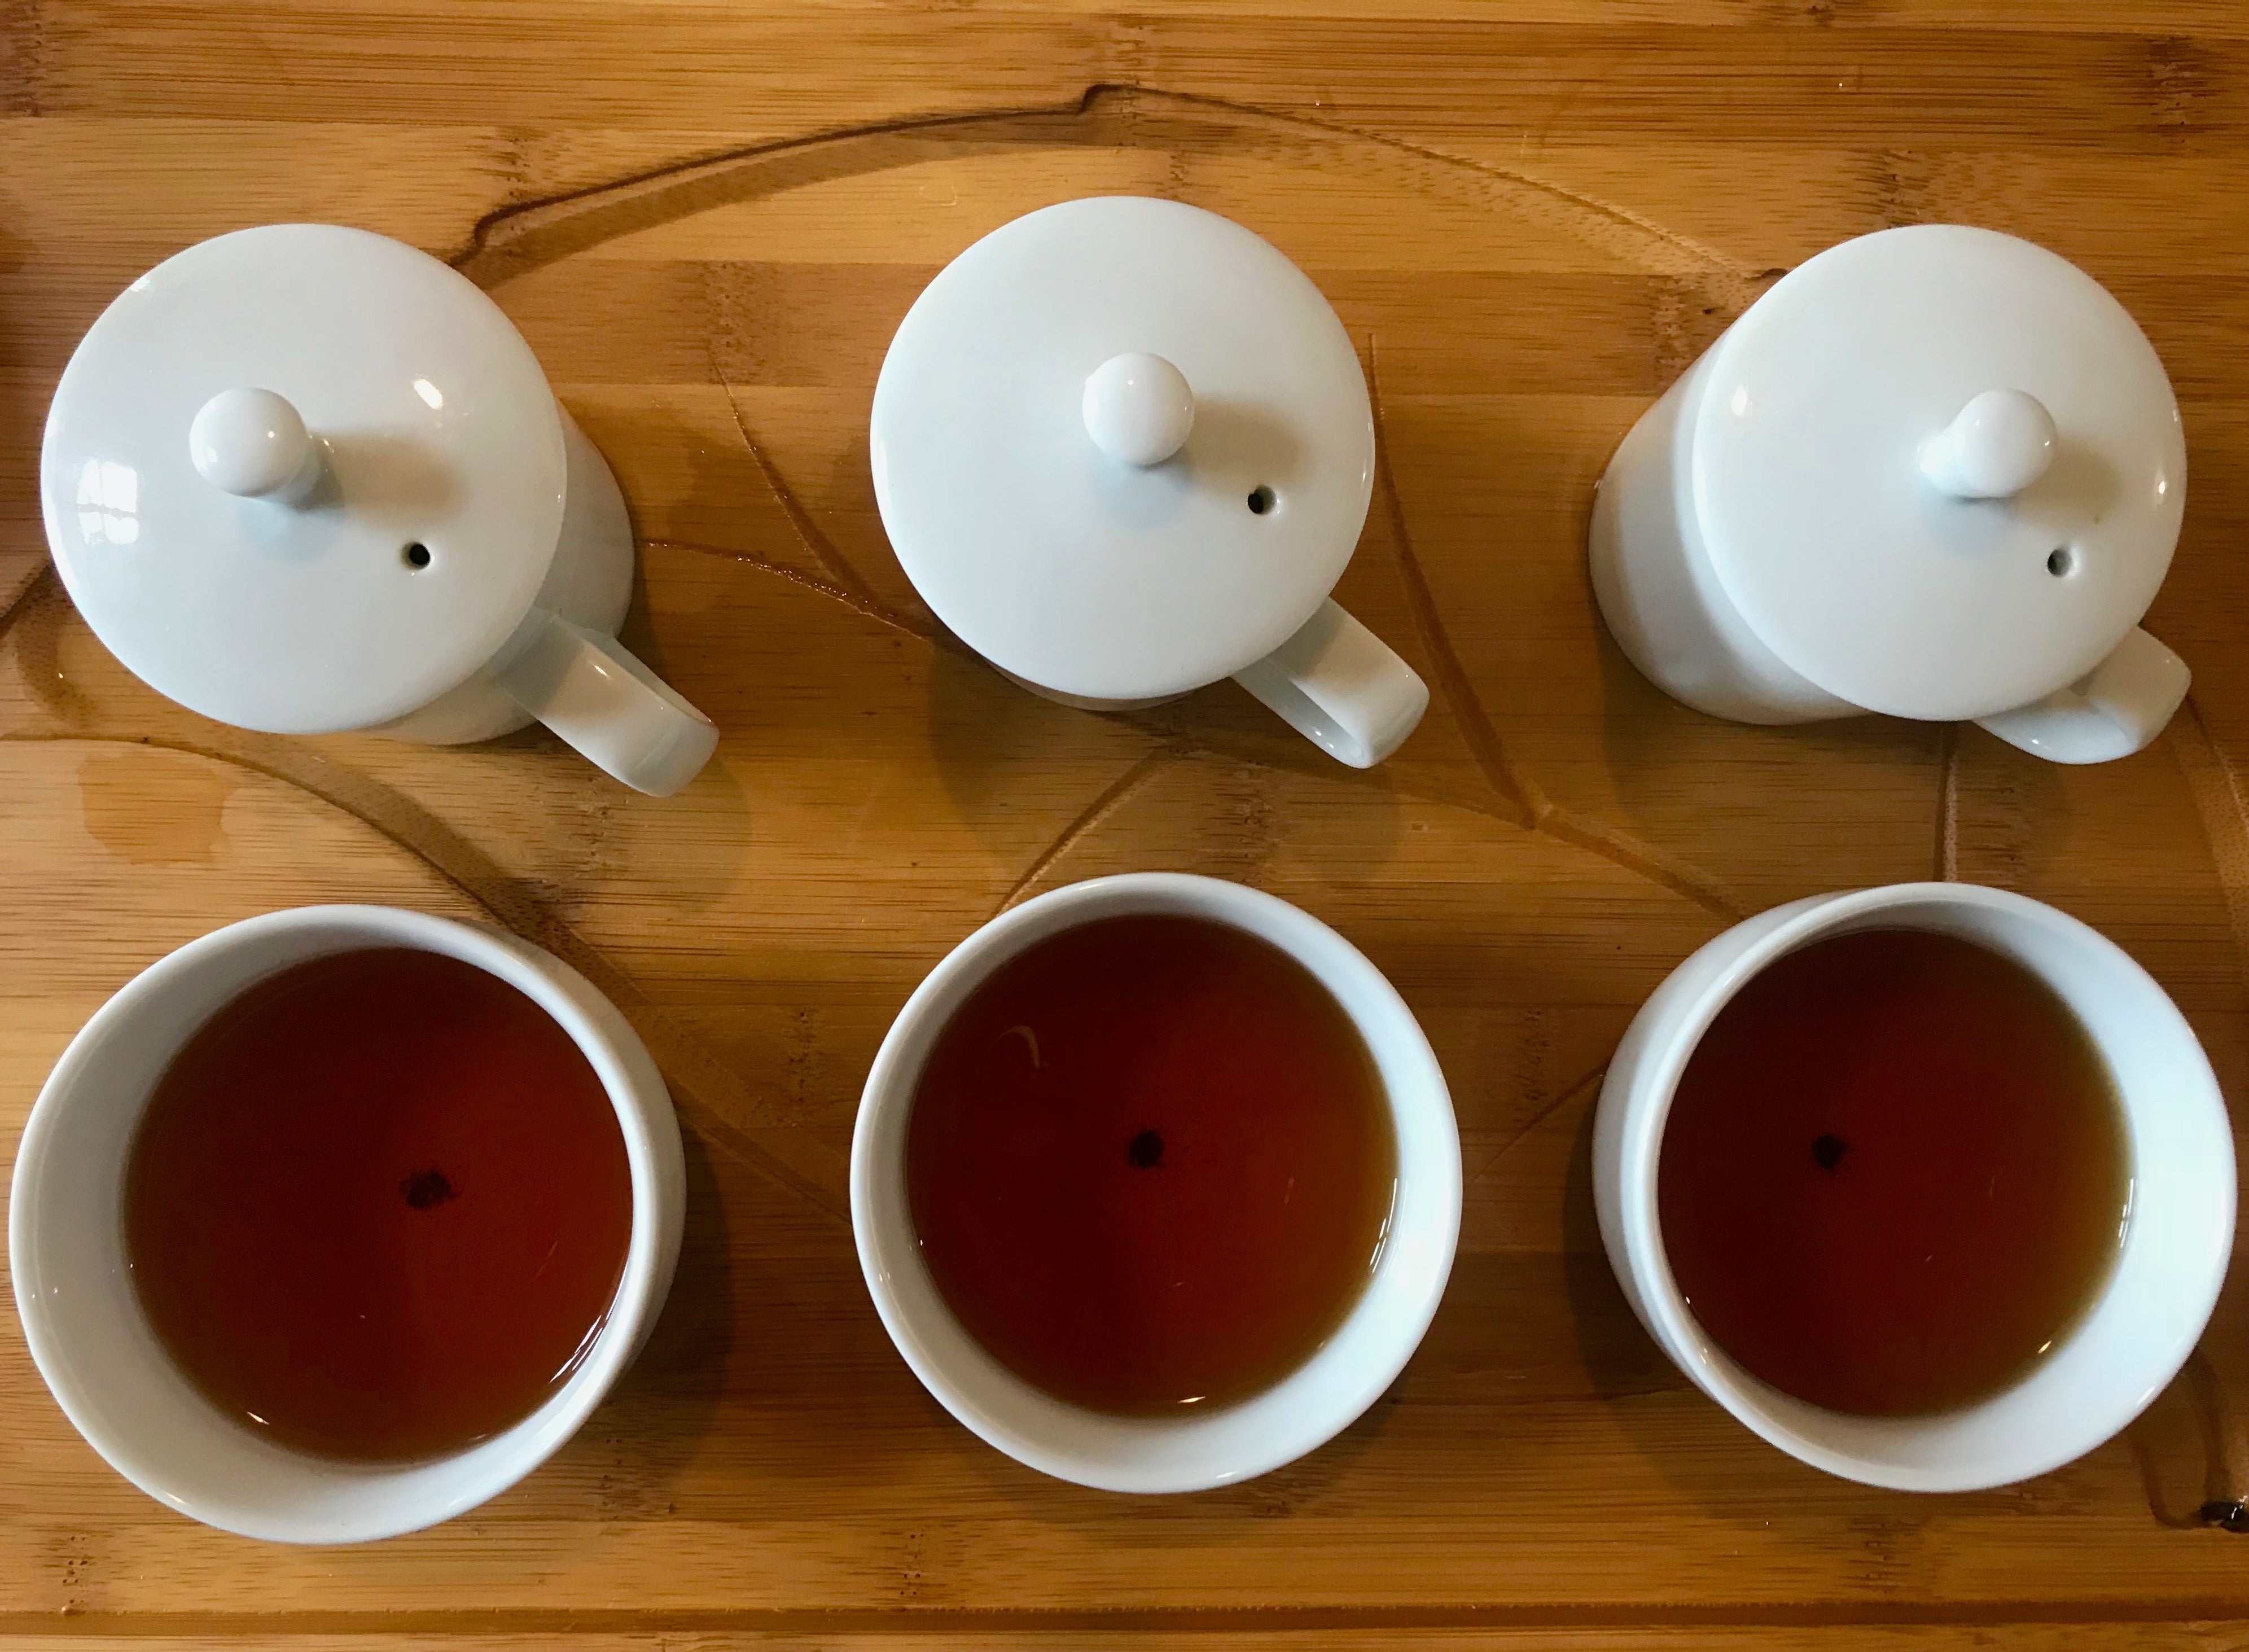 Red Oolong tea brewed